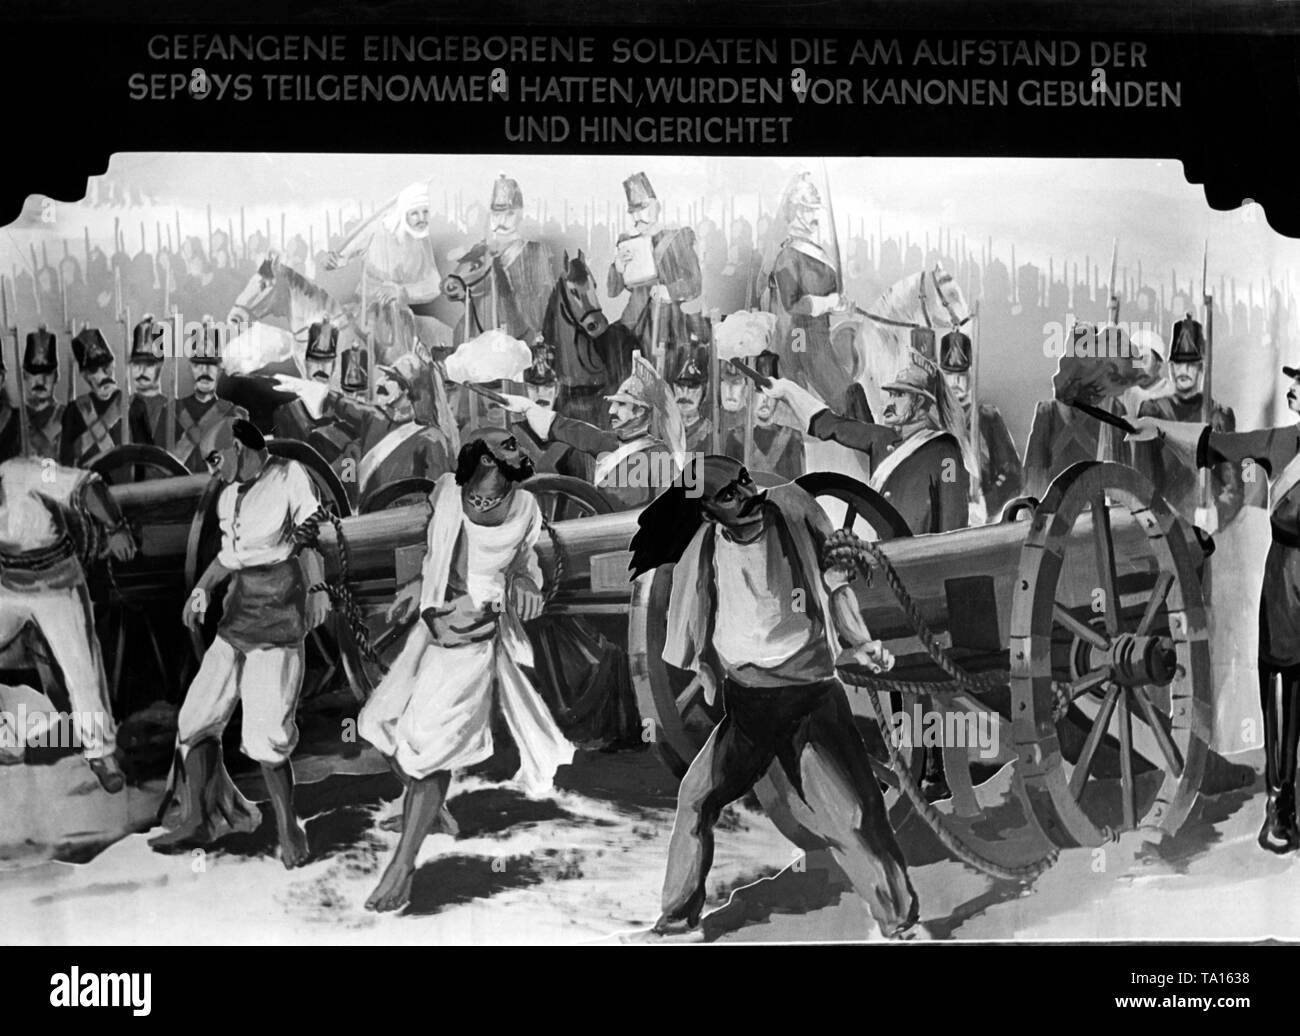 Diese anti-Britische Propaganda Exponat der Ausstellung "raubstaat England" im Rathaus Schöneberg zeigt Gefangene der Aufstand der Sepoys (Inder), die durch die Briten im Jahr 1857 gedämpft wurde. Foto: Hoffmann Stockfoto